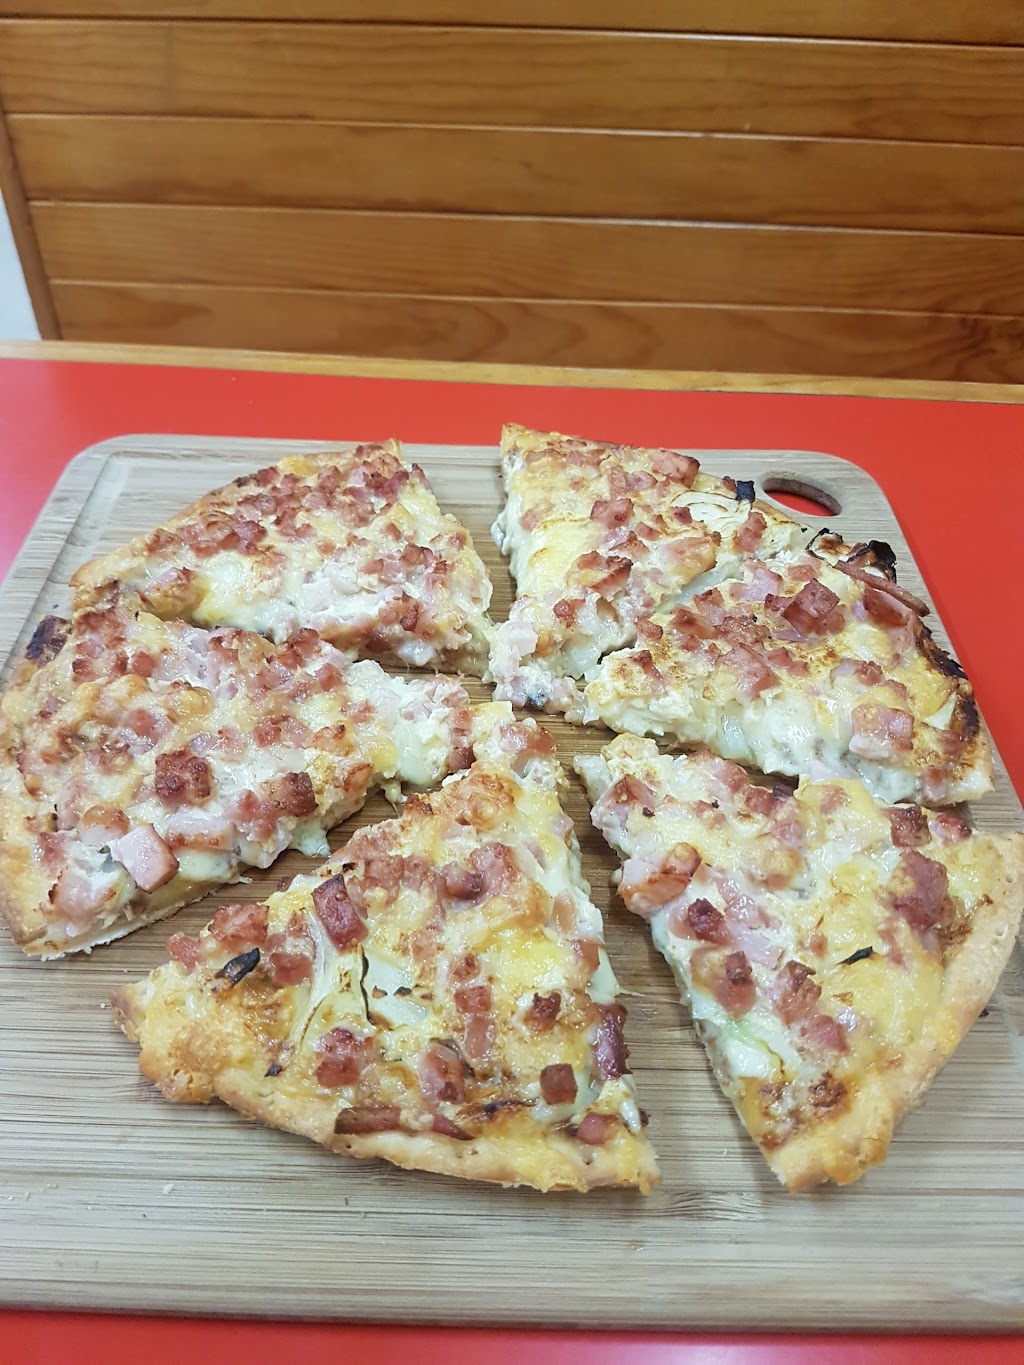 Red Grasshopper Pizza | restaurant | 16 Reibey St, Ulverstone TAS 7315, Australia | 0364253353 OR +61 3 6425 3353